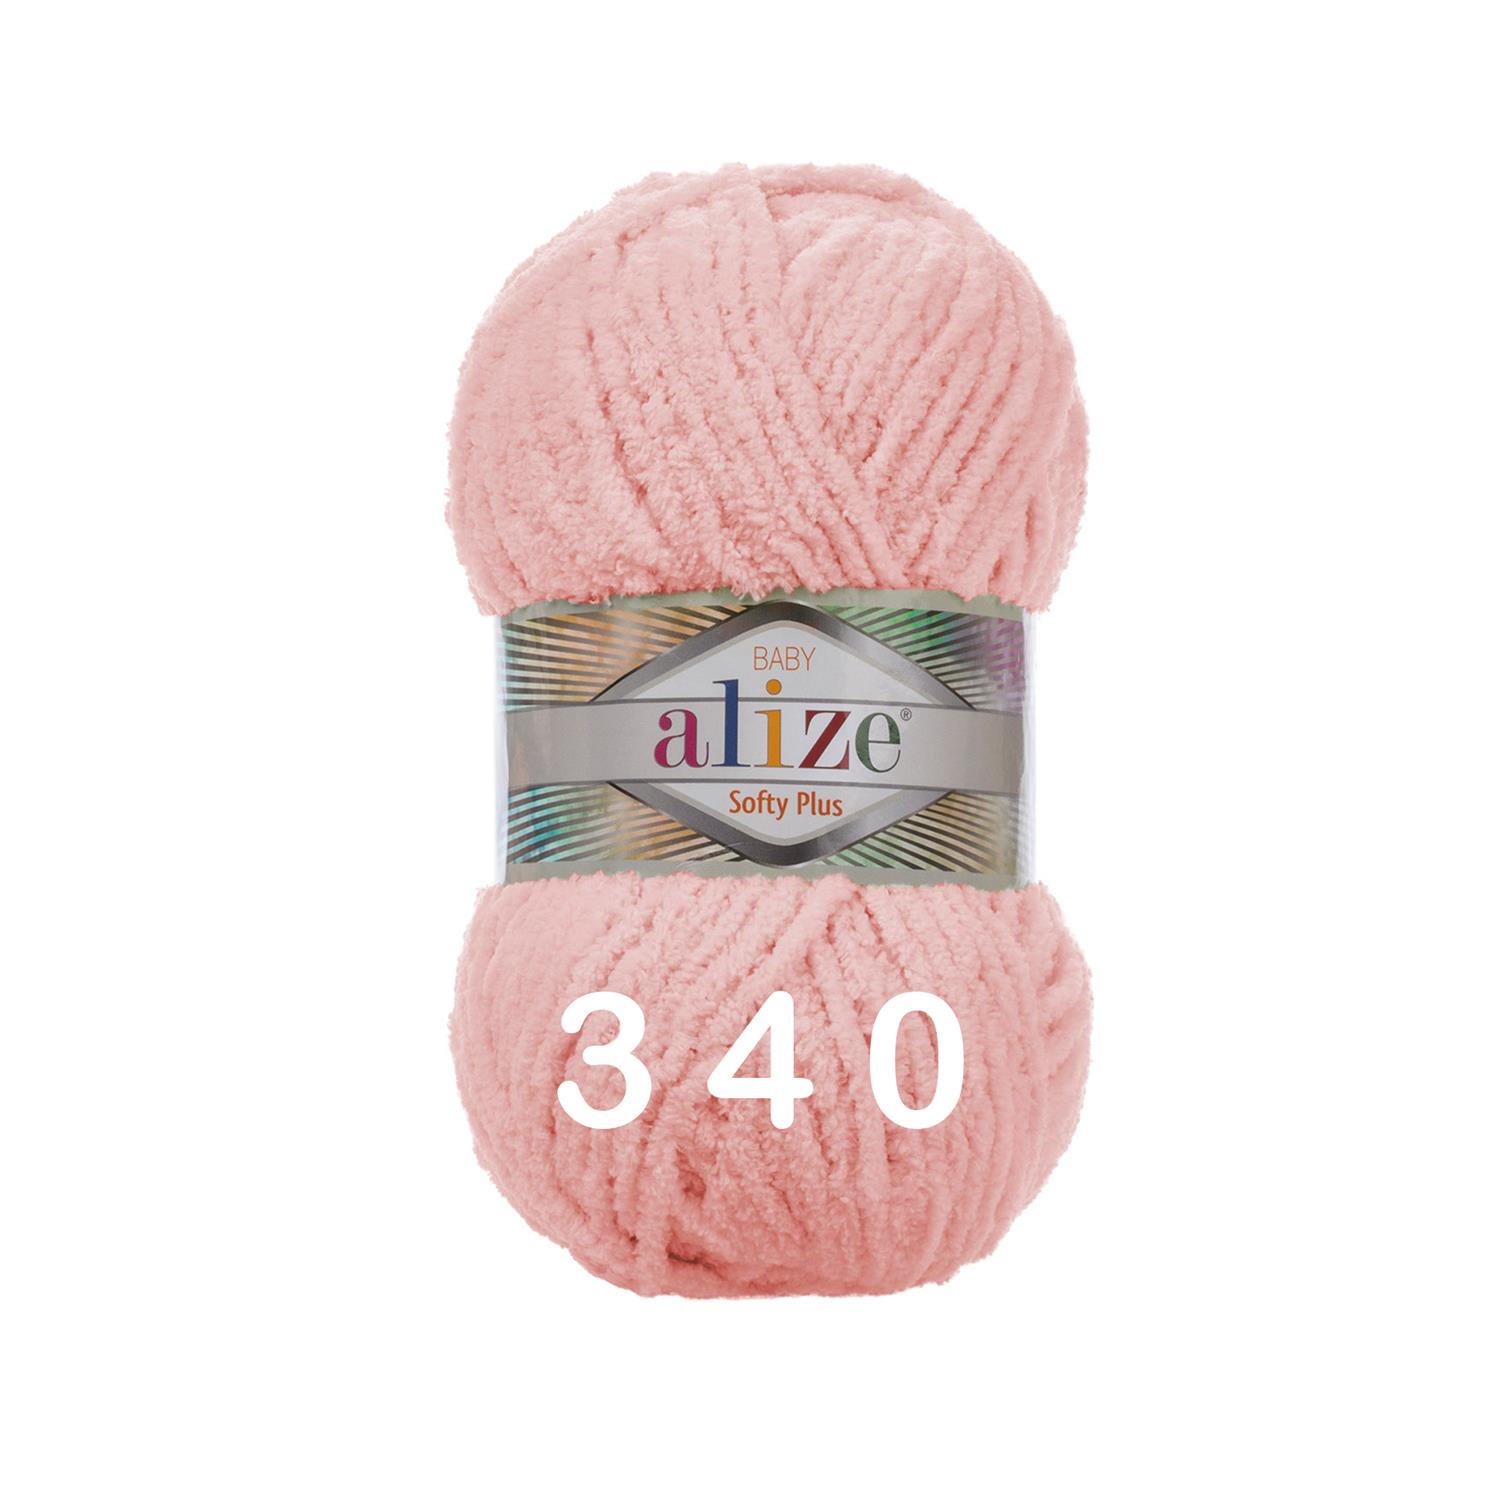 Alize Softy Plus, 340 powder pink